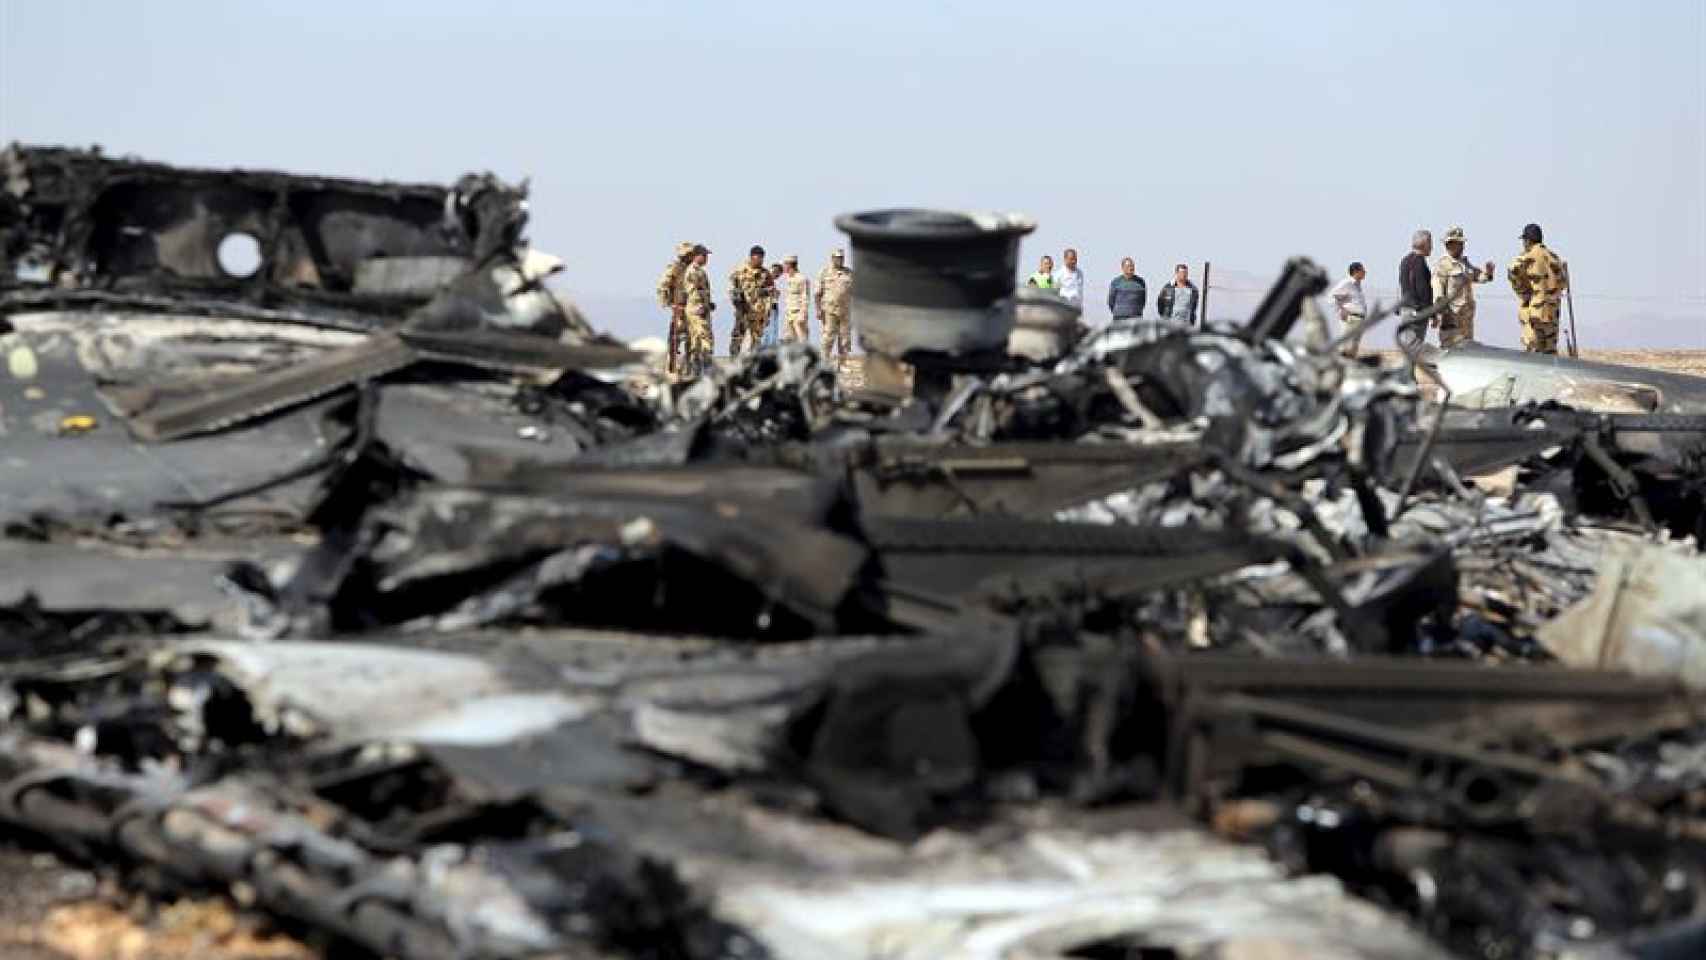 Restos del avión siniestrado en el desierto del Sinai.